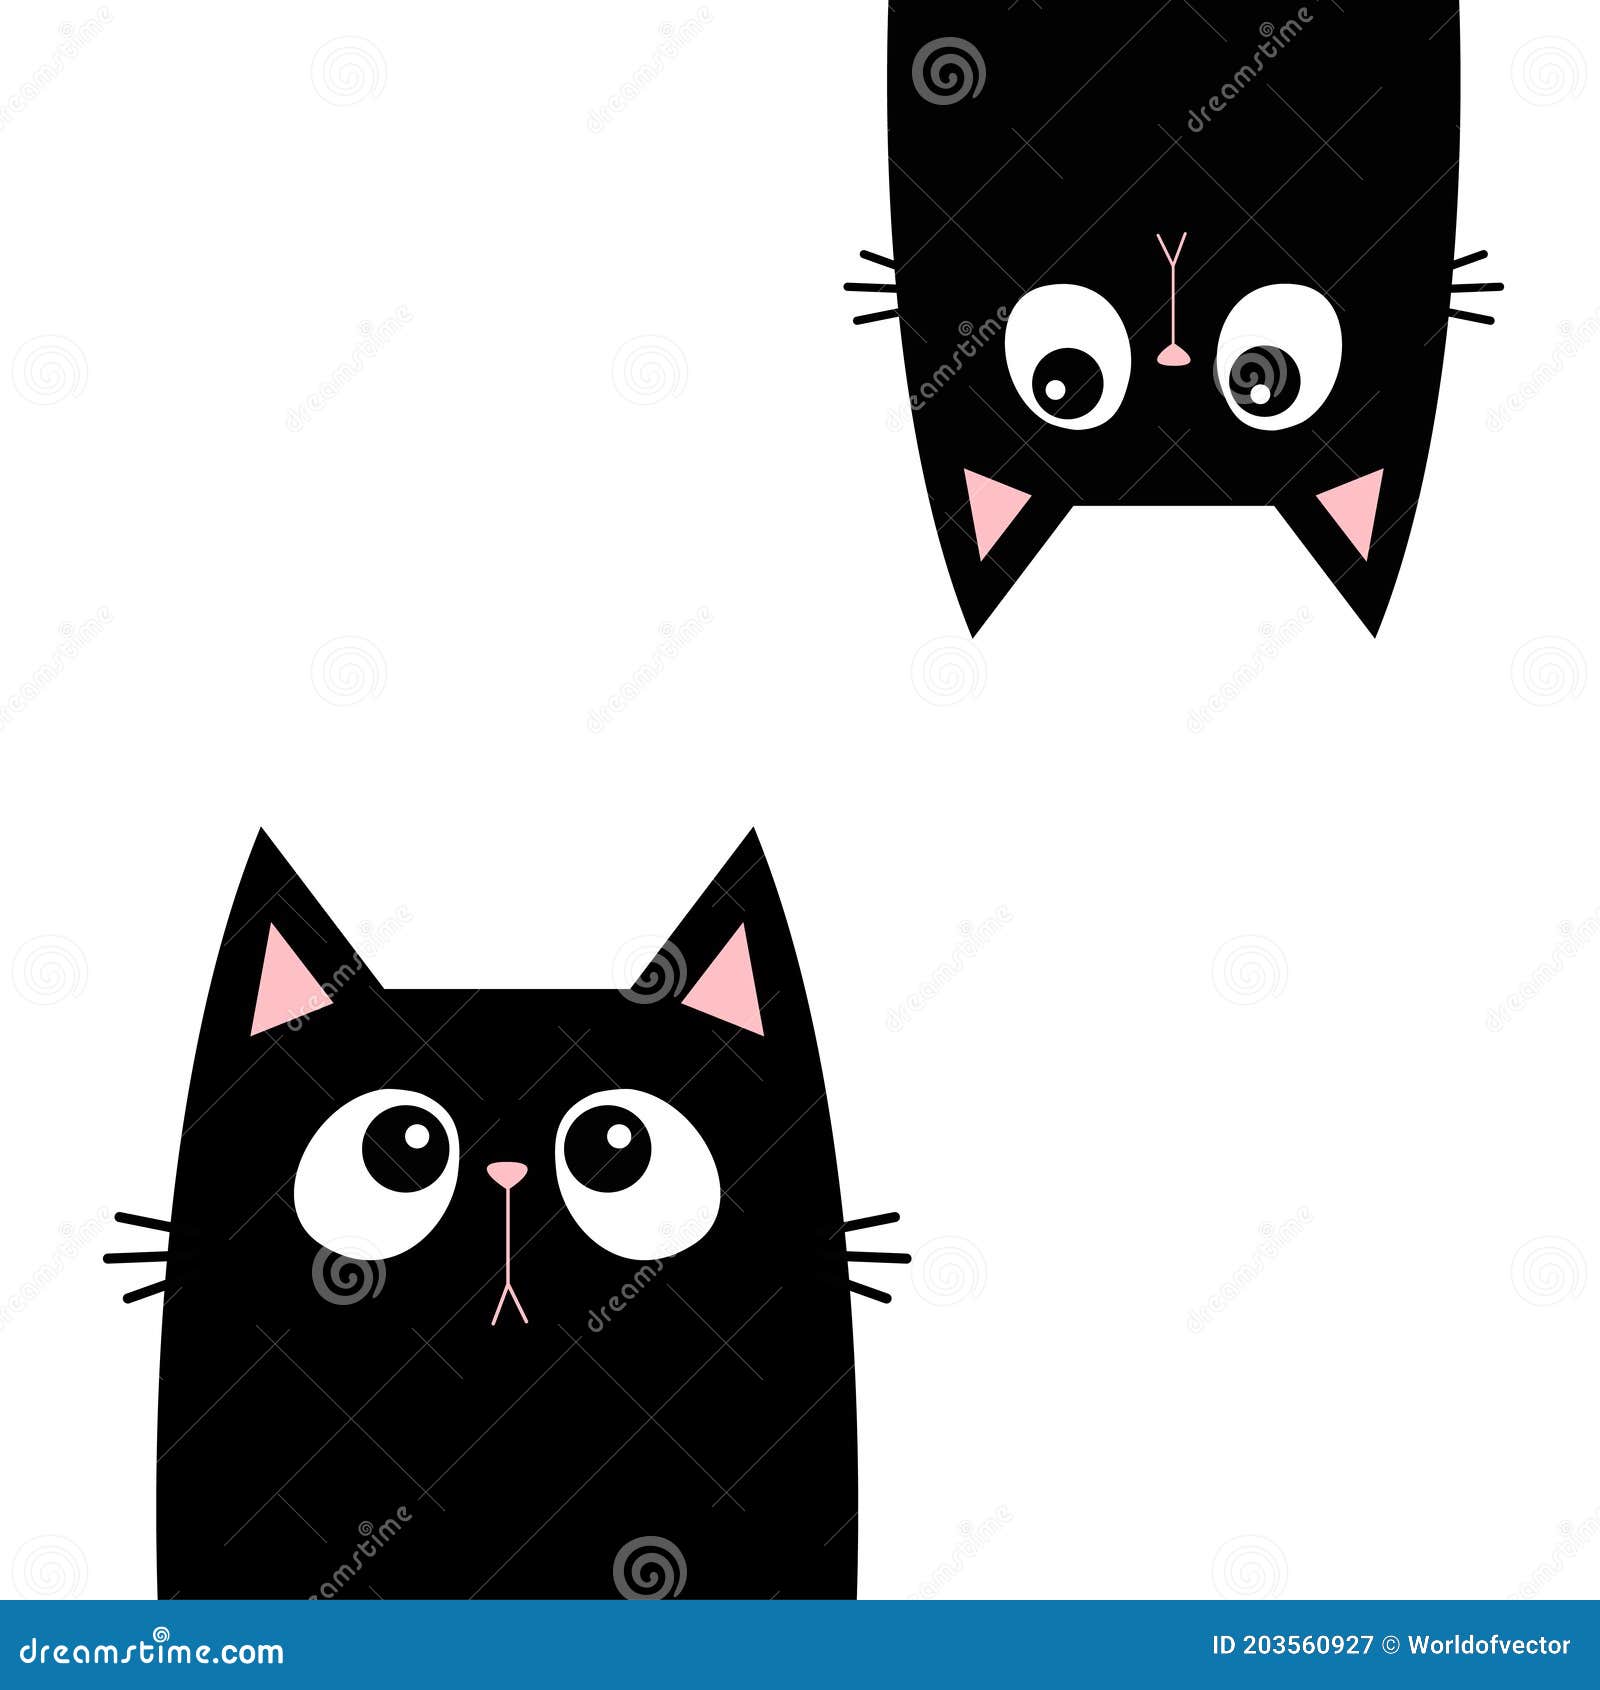 Adesivo de gato kawaii fofo com etiqueta em branco, etiqueta de nome,  coleção de conjunto de vetores de desenhos animados vetor de gato fofo